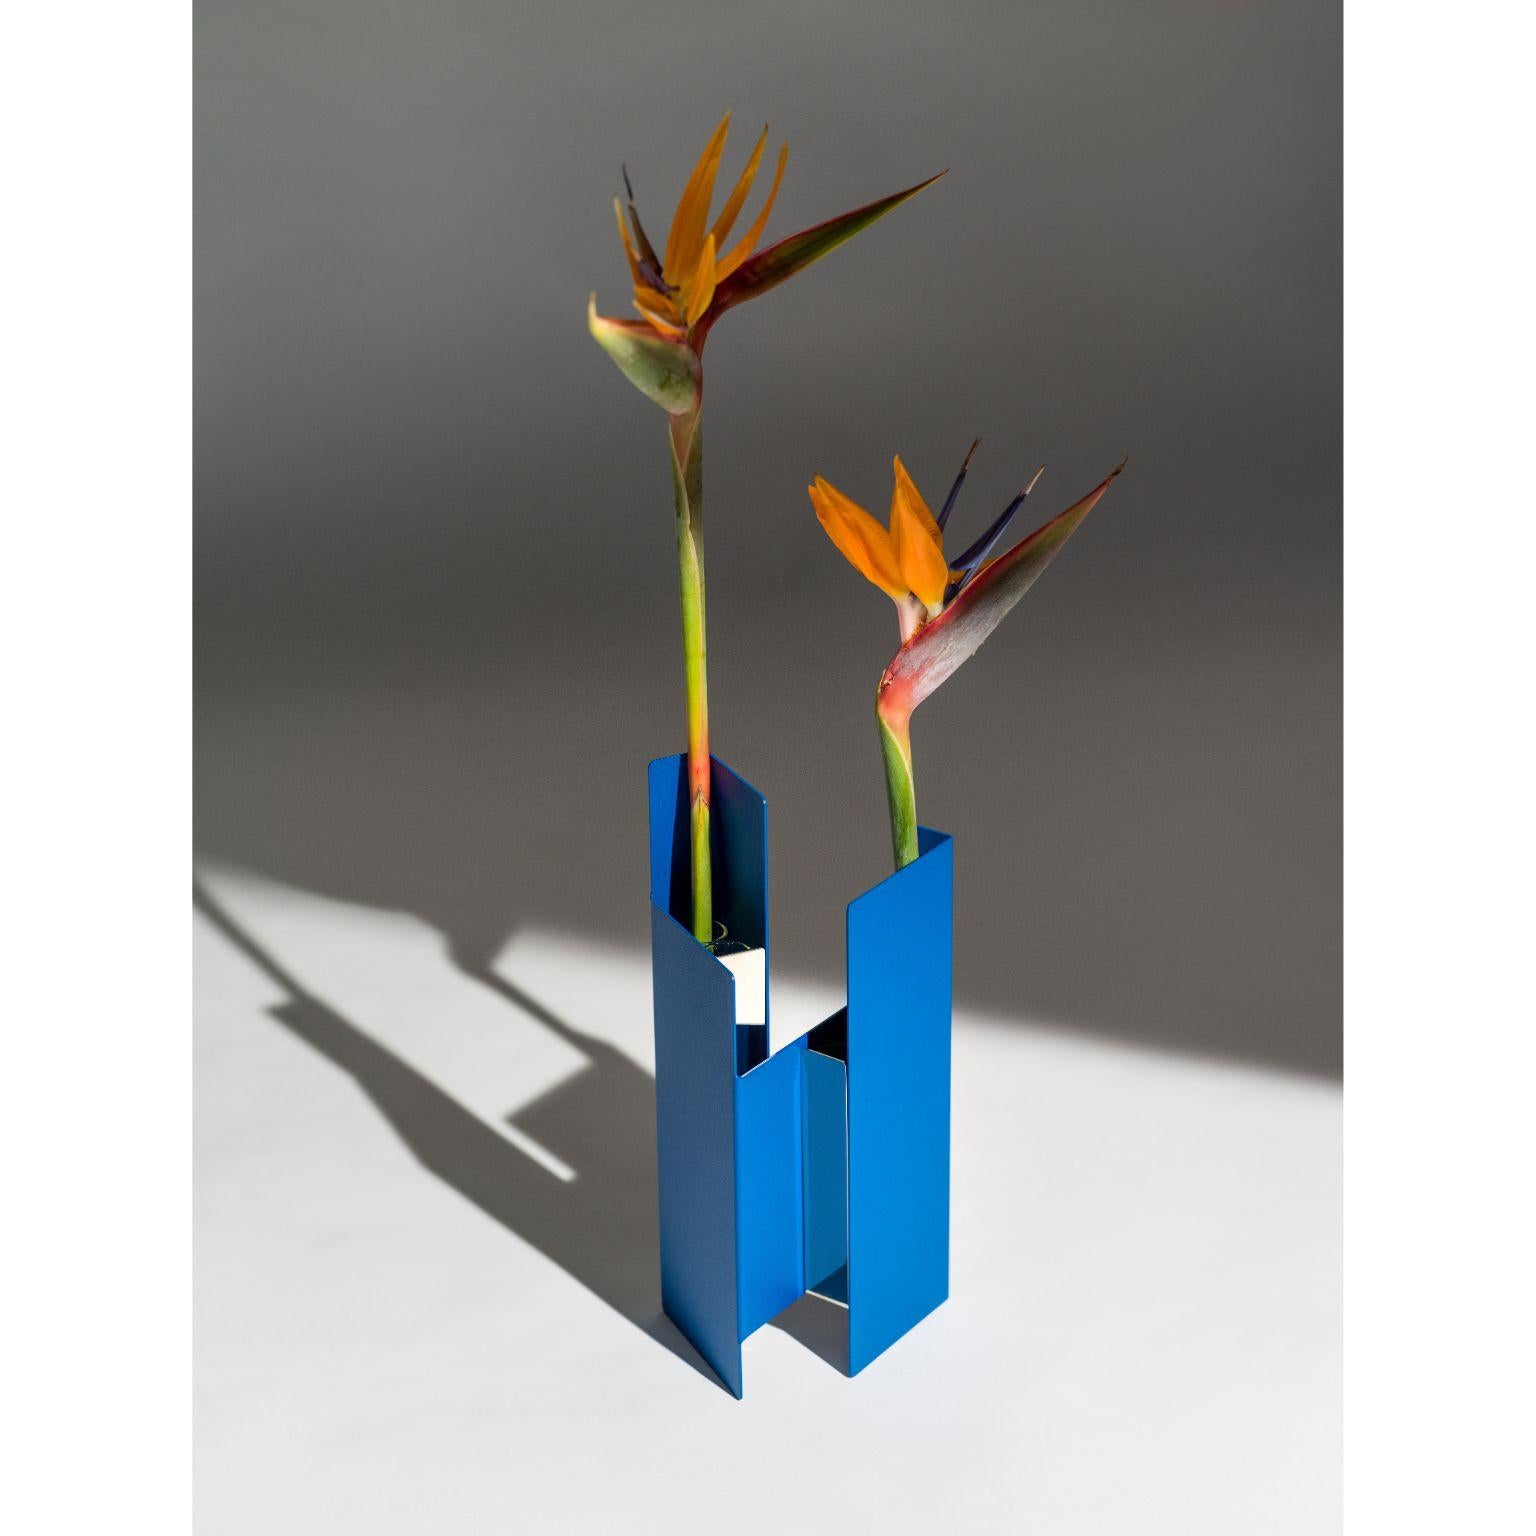 Blaue Fugit-Vase von Mason Editions
Entwurf: Matteo Fiorini
Abmessungen: 12 × 15 × 34 cm
MATERIALIEN: Eisen und Pirex-Glas

Die Vase Fugit besteht aus einem Metallblech, das sich um sich selbst zu drehen und zu schließen scheint, wodurch ein Wechsel